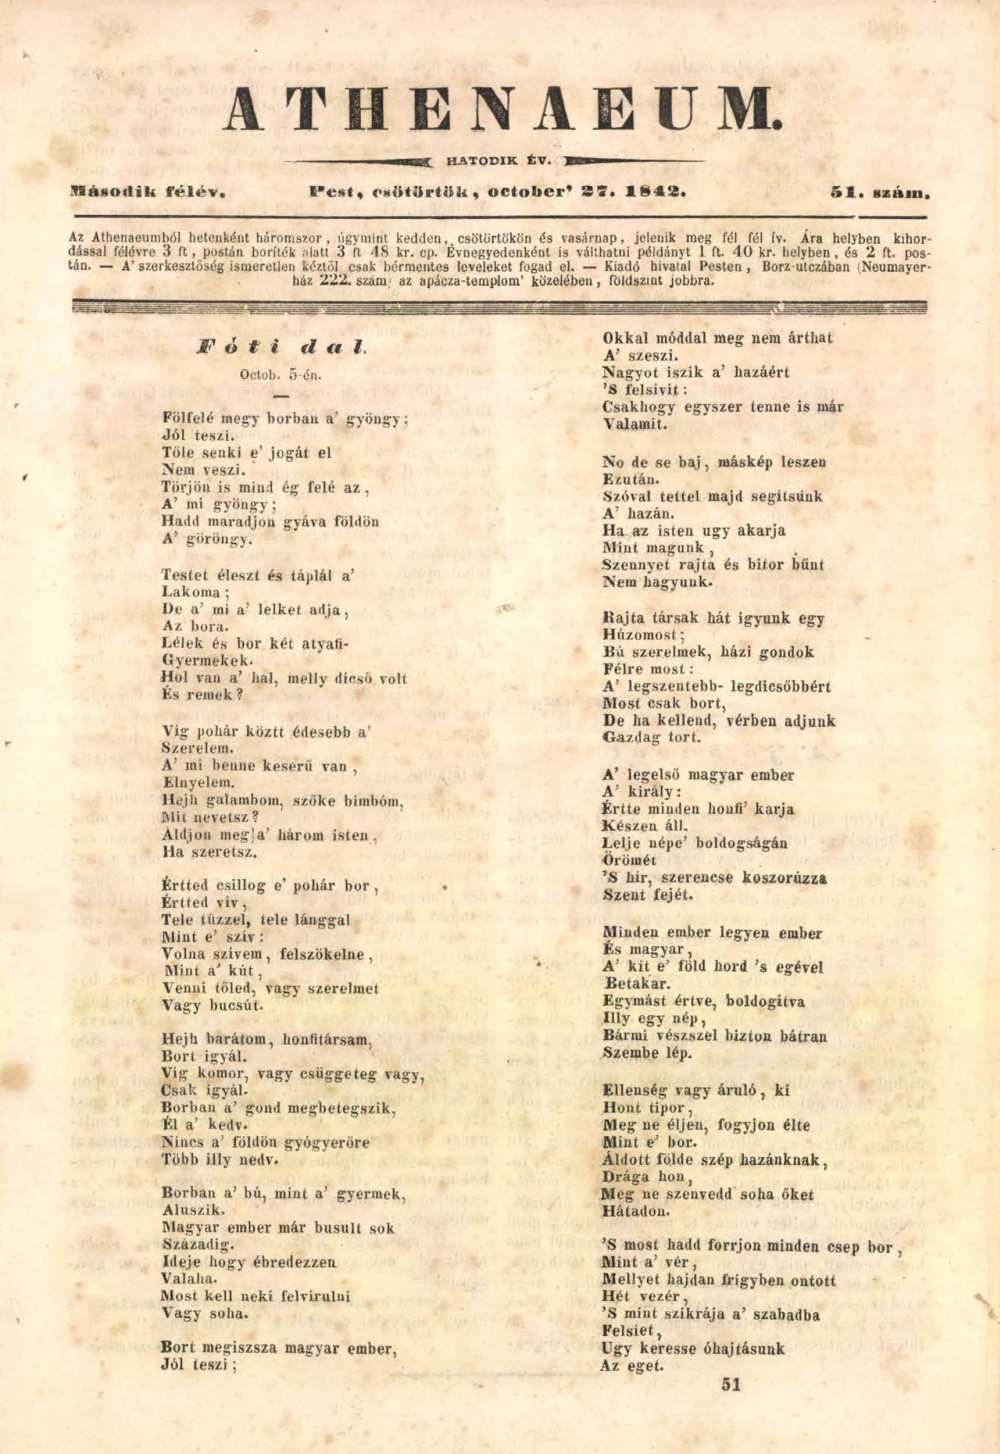 Vörösmarty Fóti dal című költeményének első közlése az Athenaeum 1842. október 27-i számában. Részlet